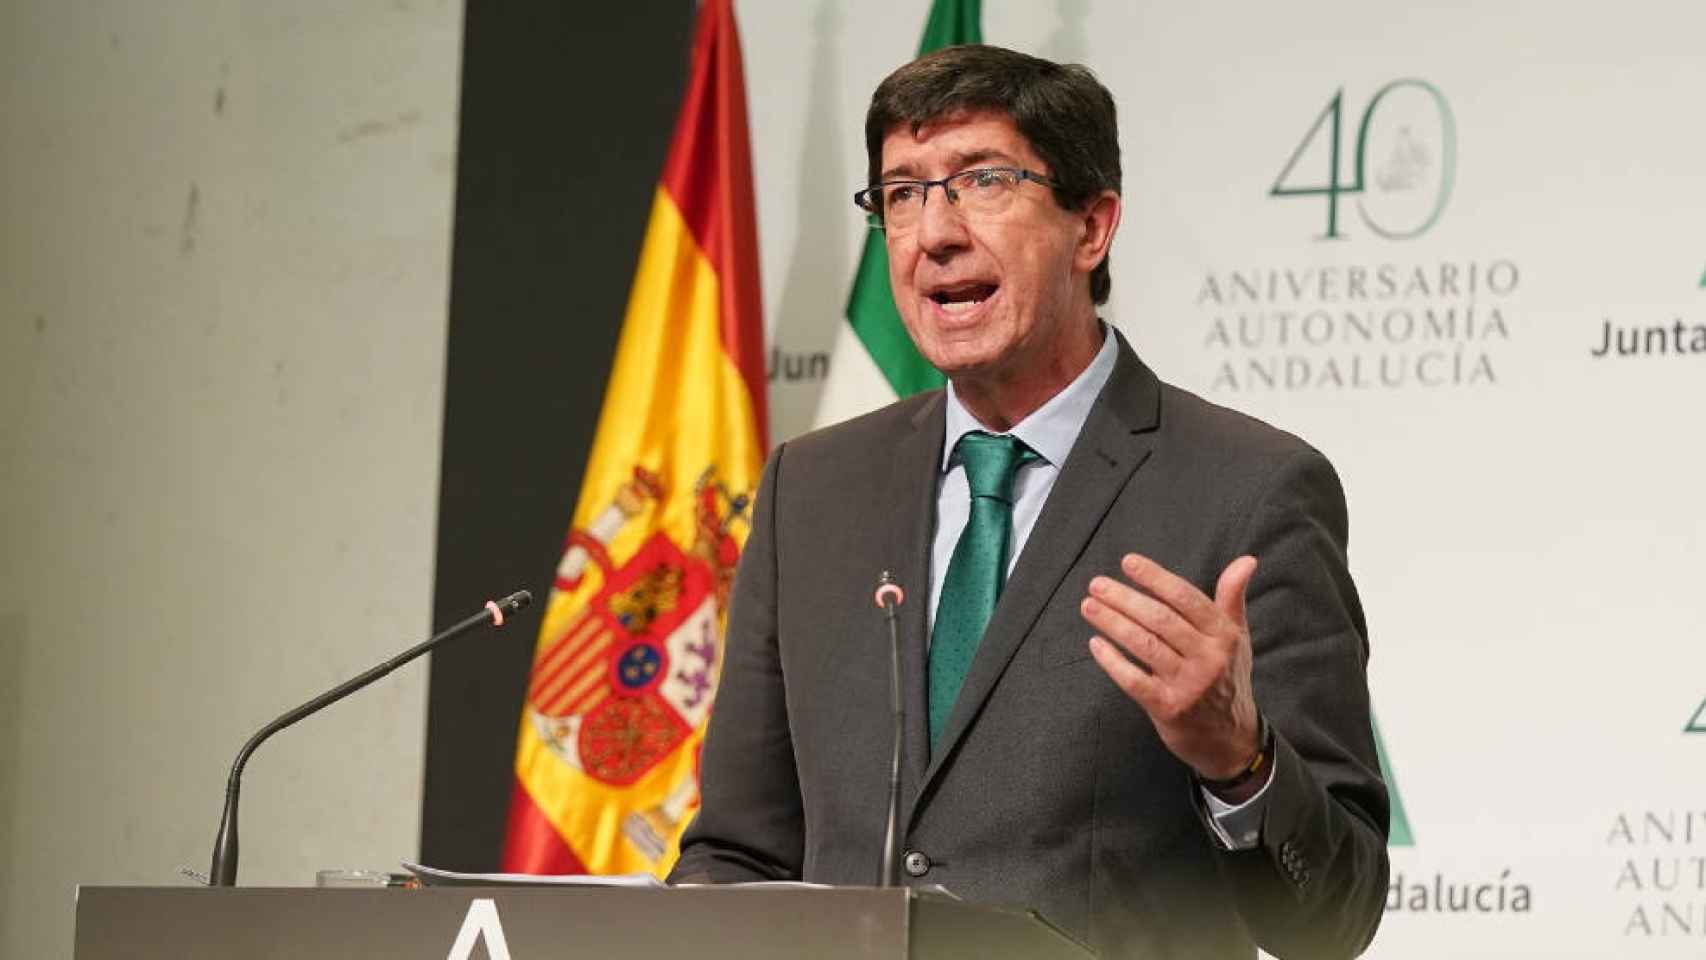 Juan Marín, consejero de Turismo, Regeneración, Justicia y Administración Local de Andalucía